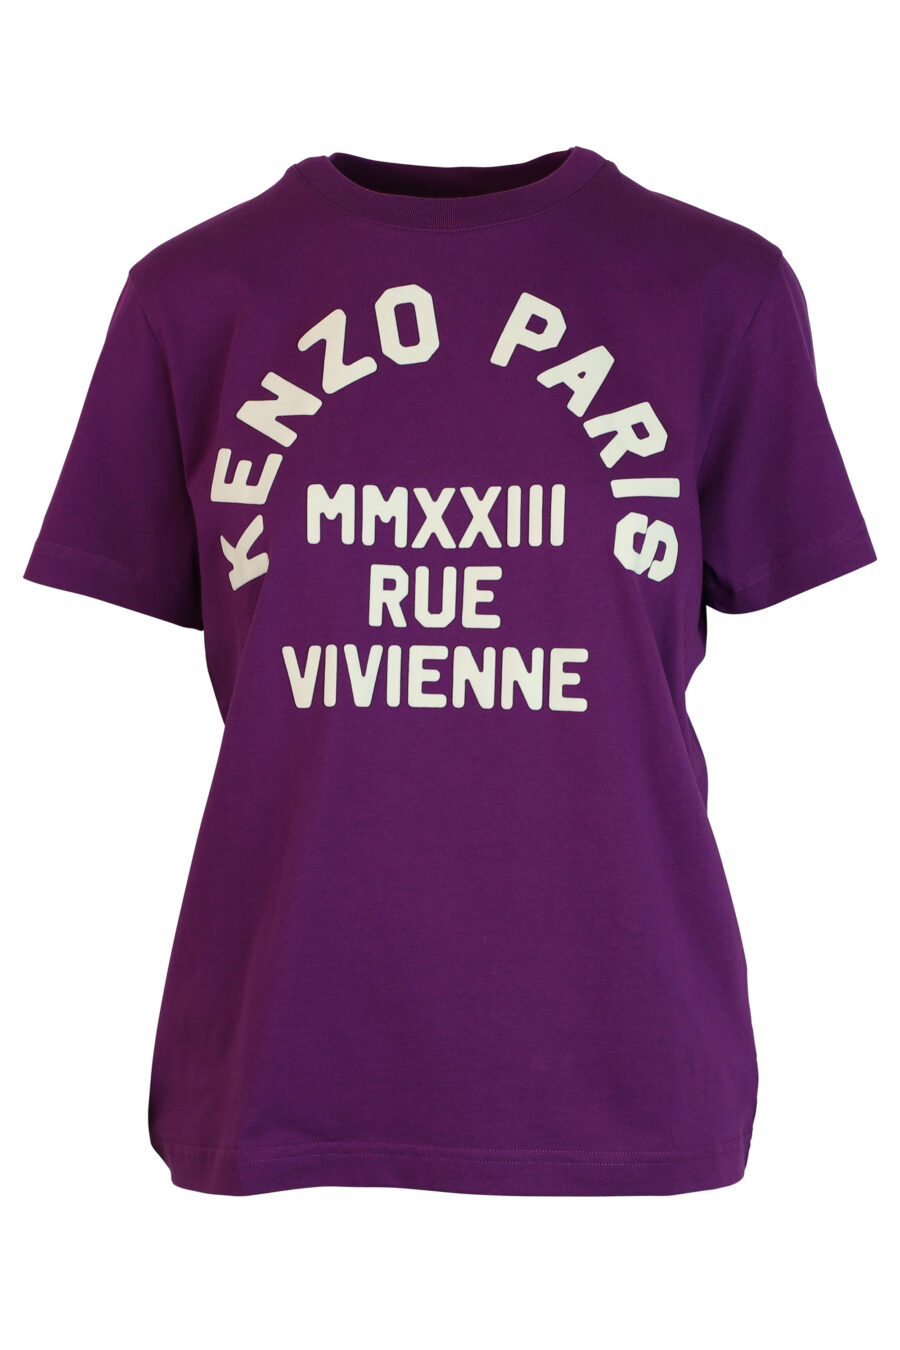 Camiseta violeta con maxilogo "rue vivienne" blanco - 3612230461253